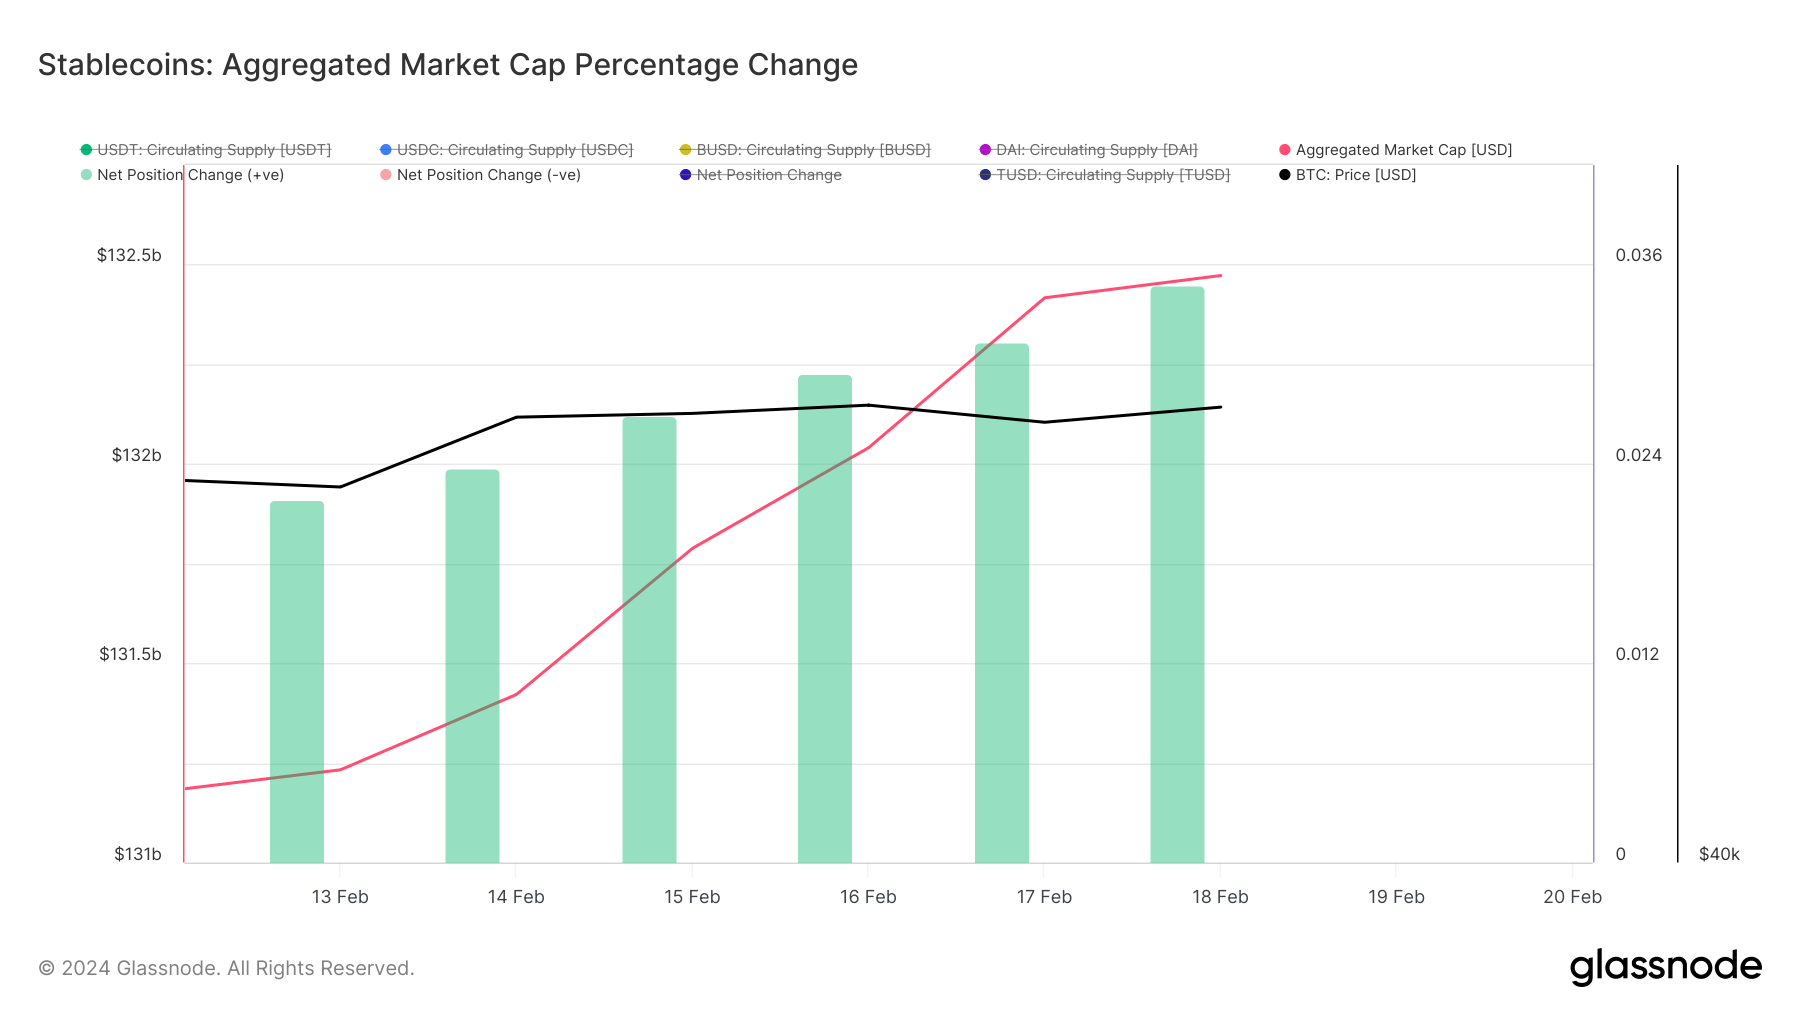 stablecoin market cap 30d percent change